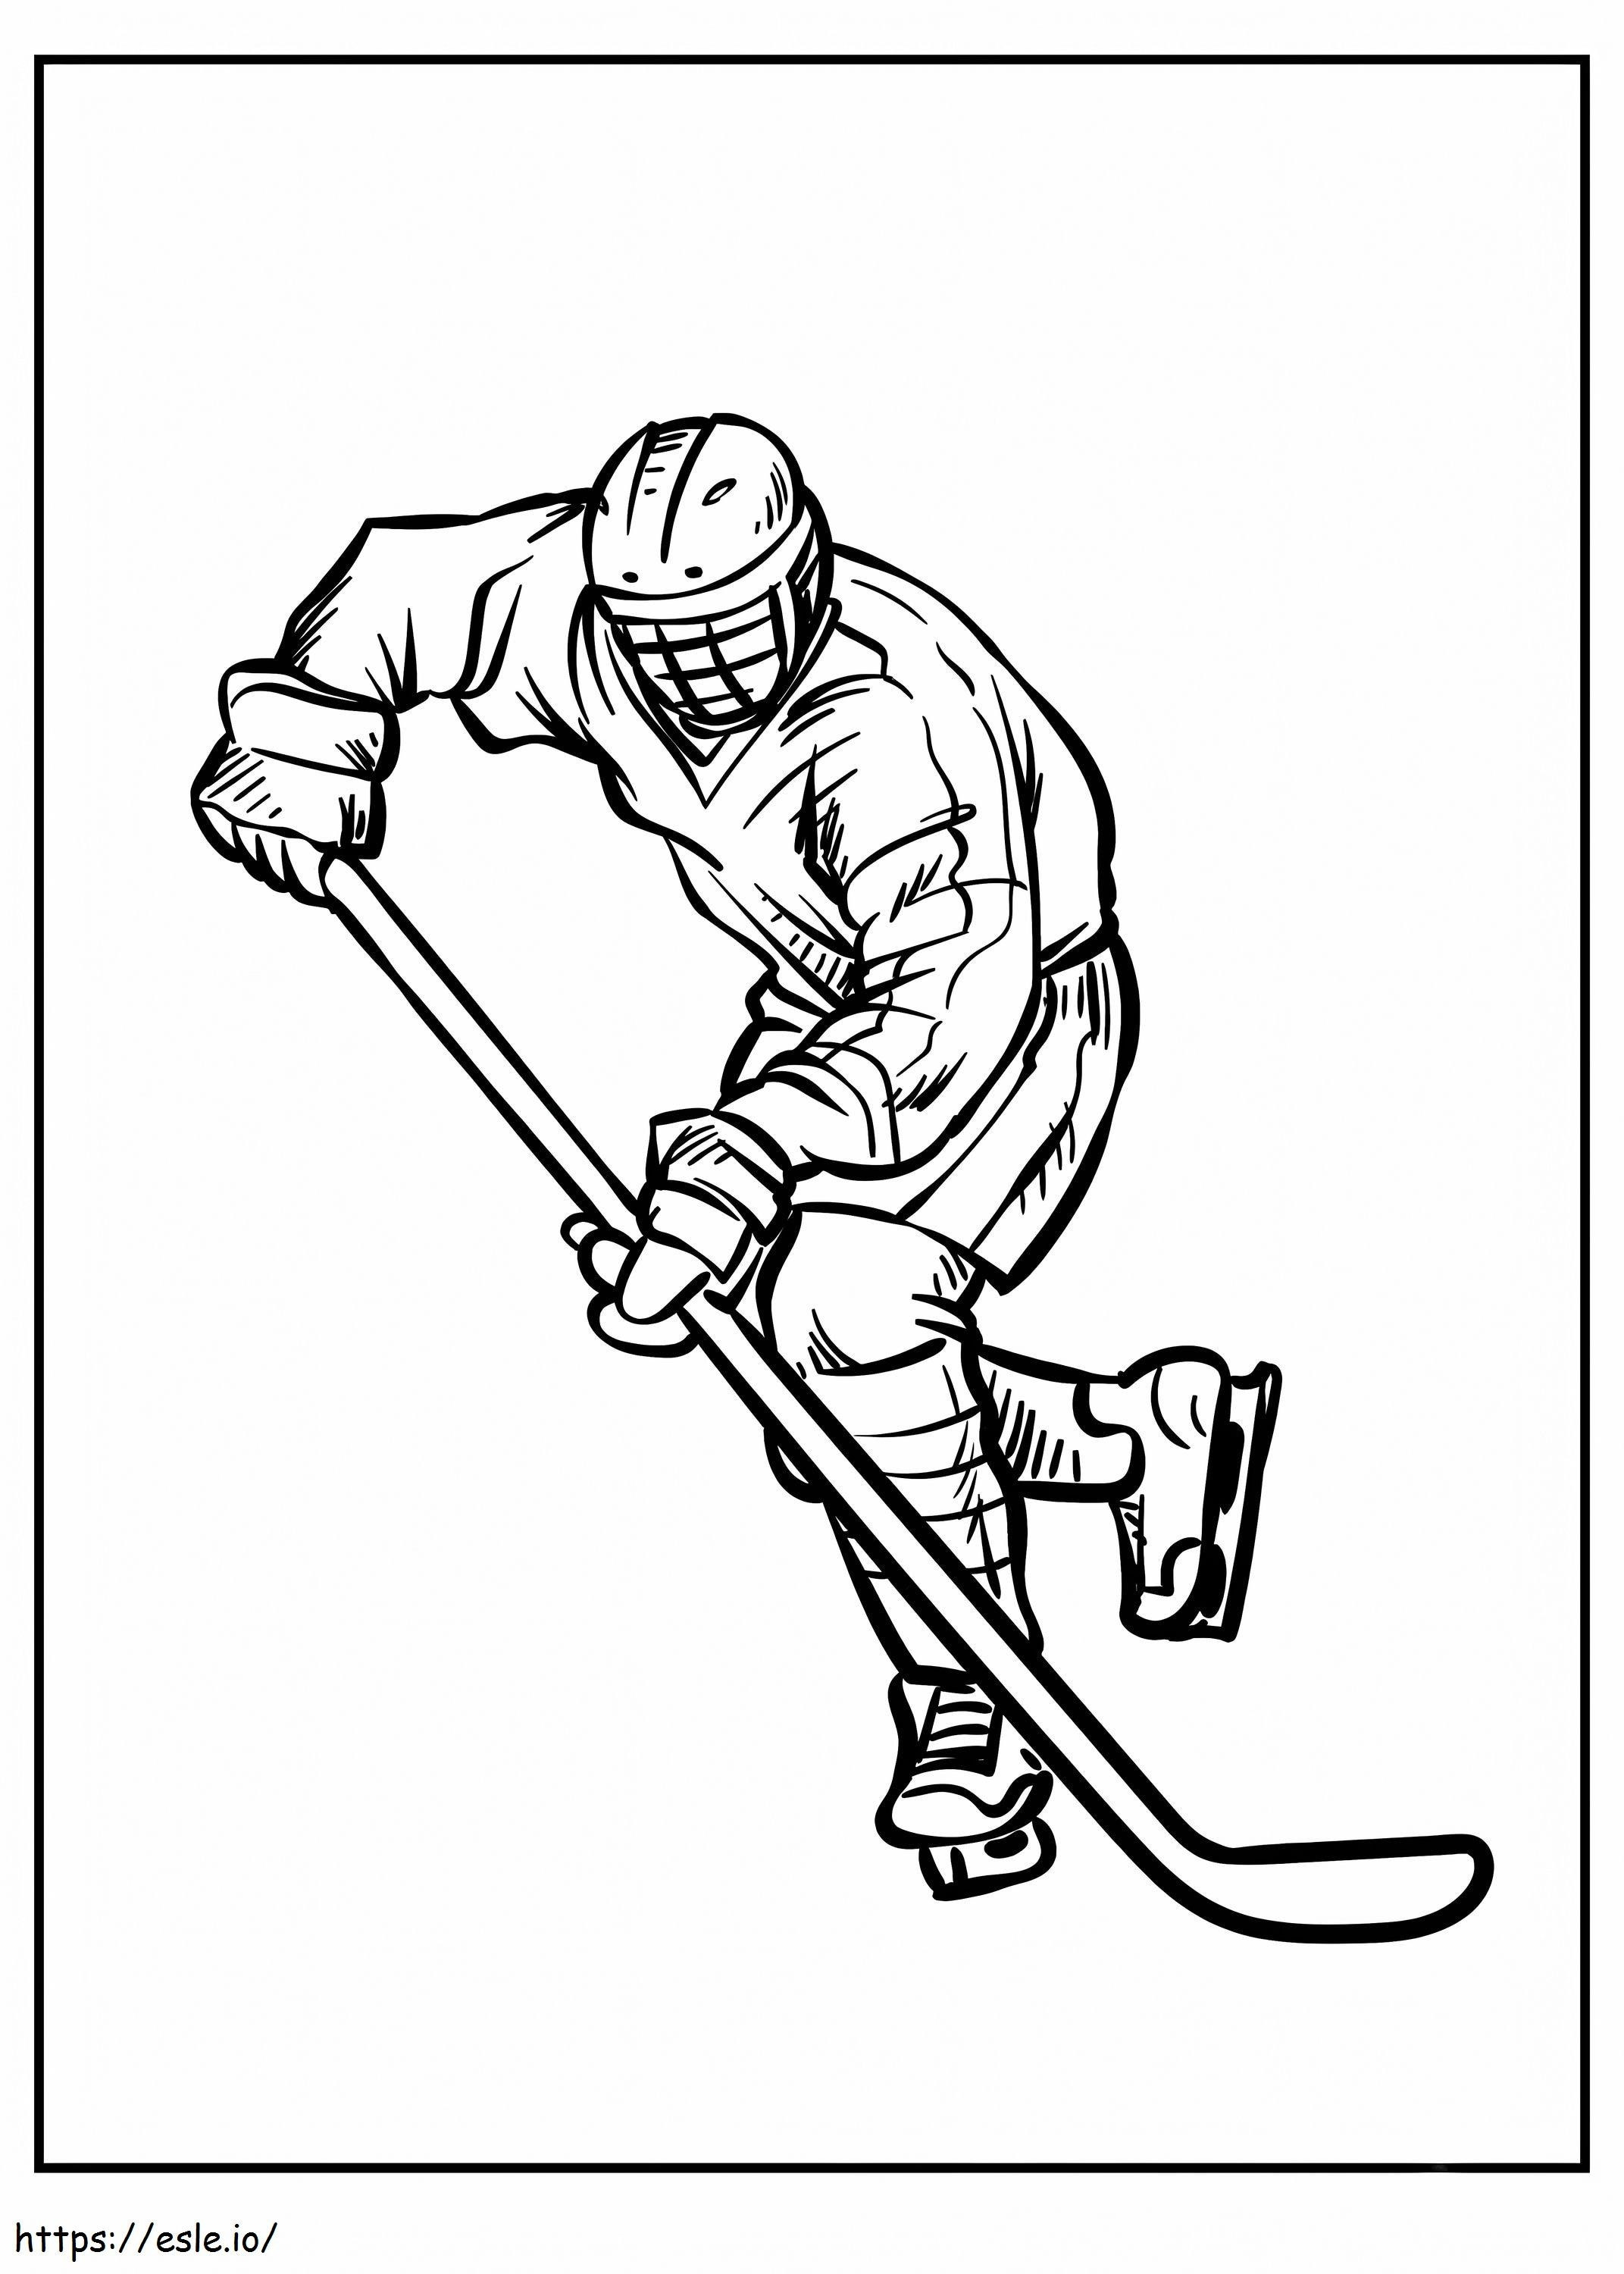 Coloriage Homme jouant au hockey à imprimer dessin